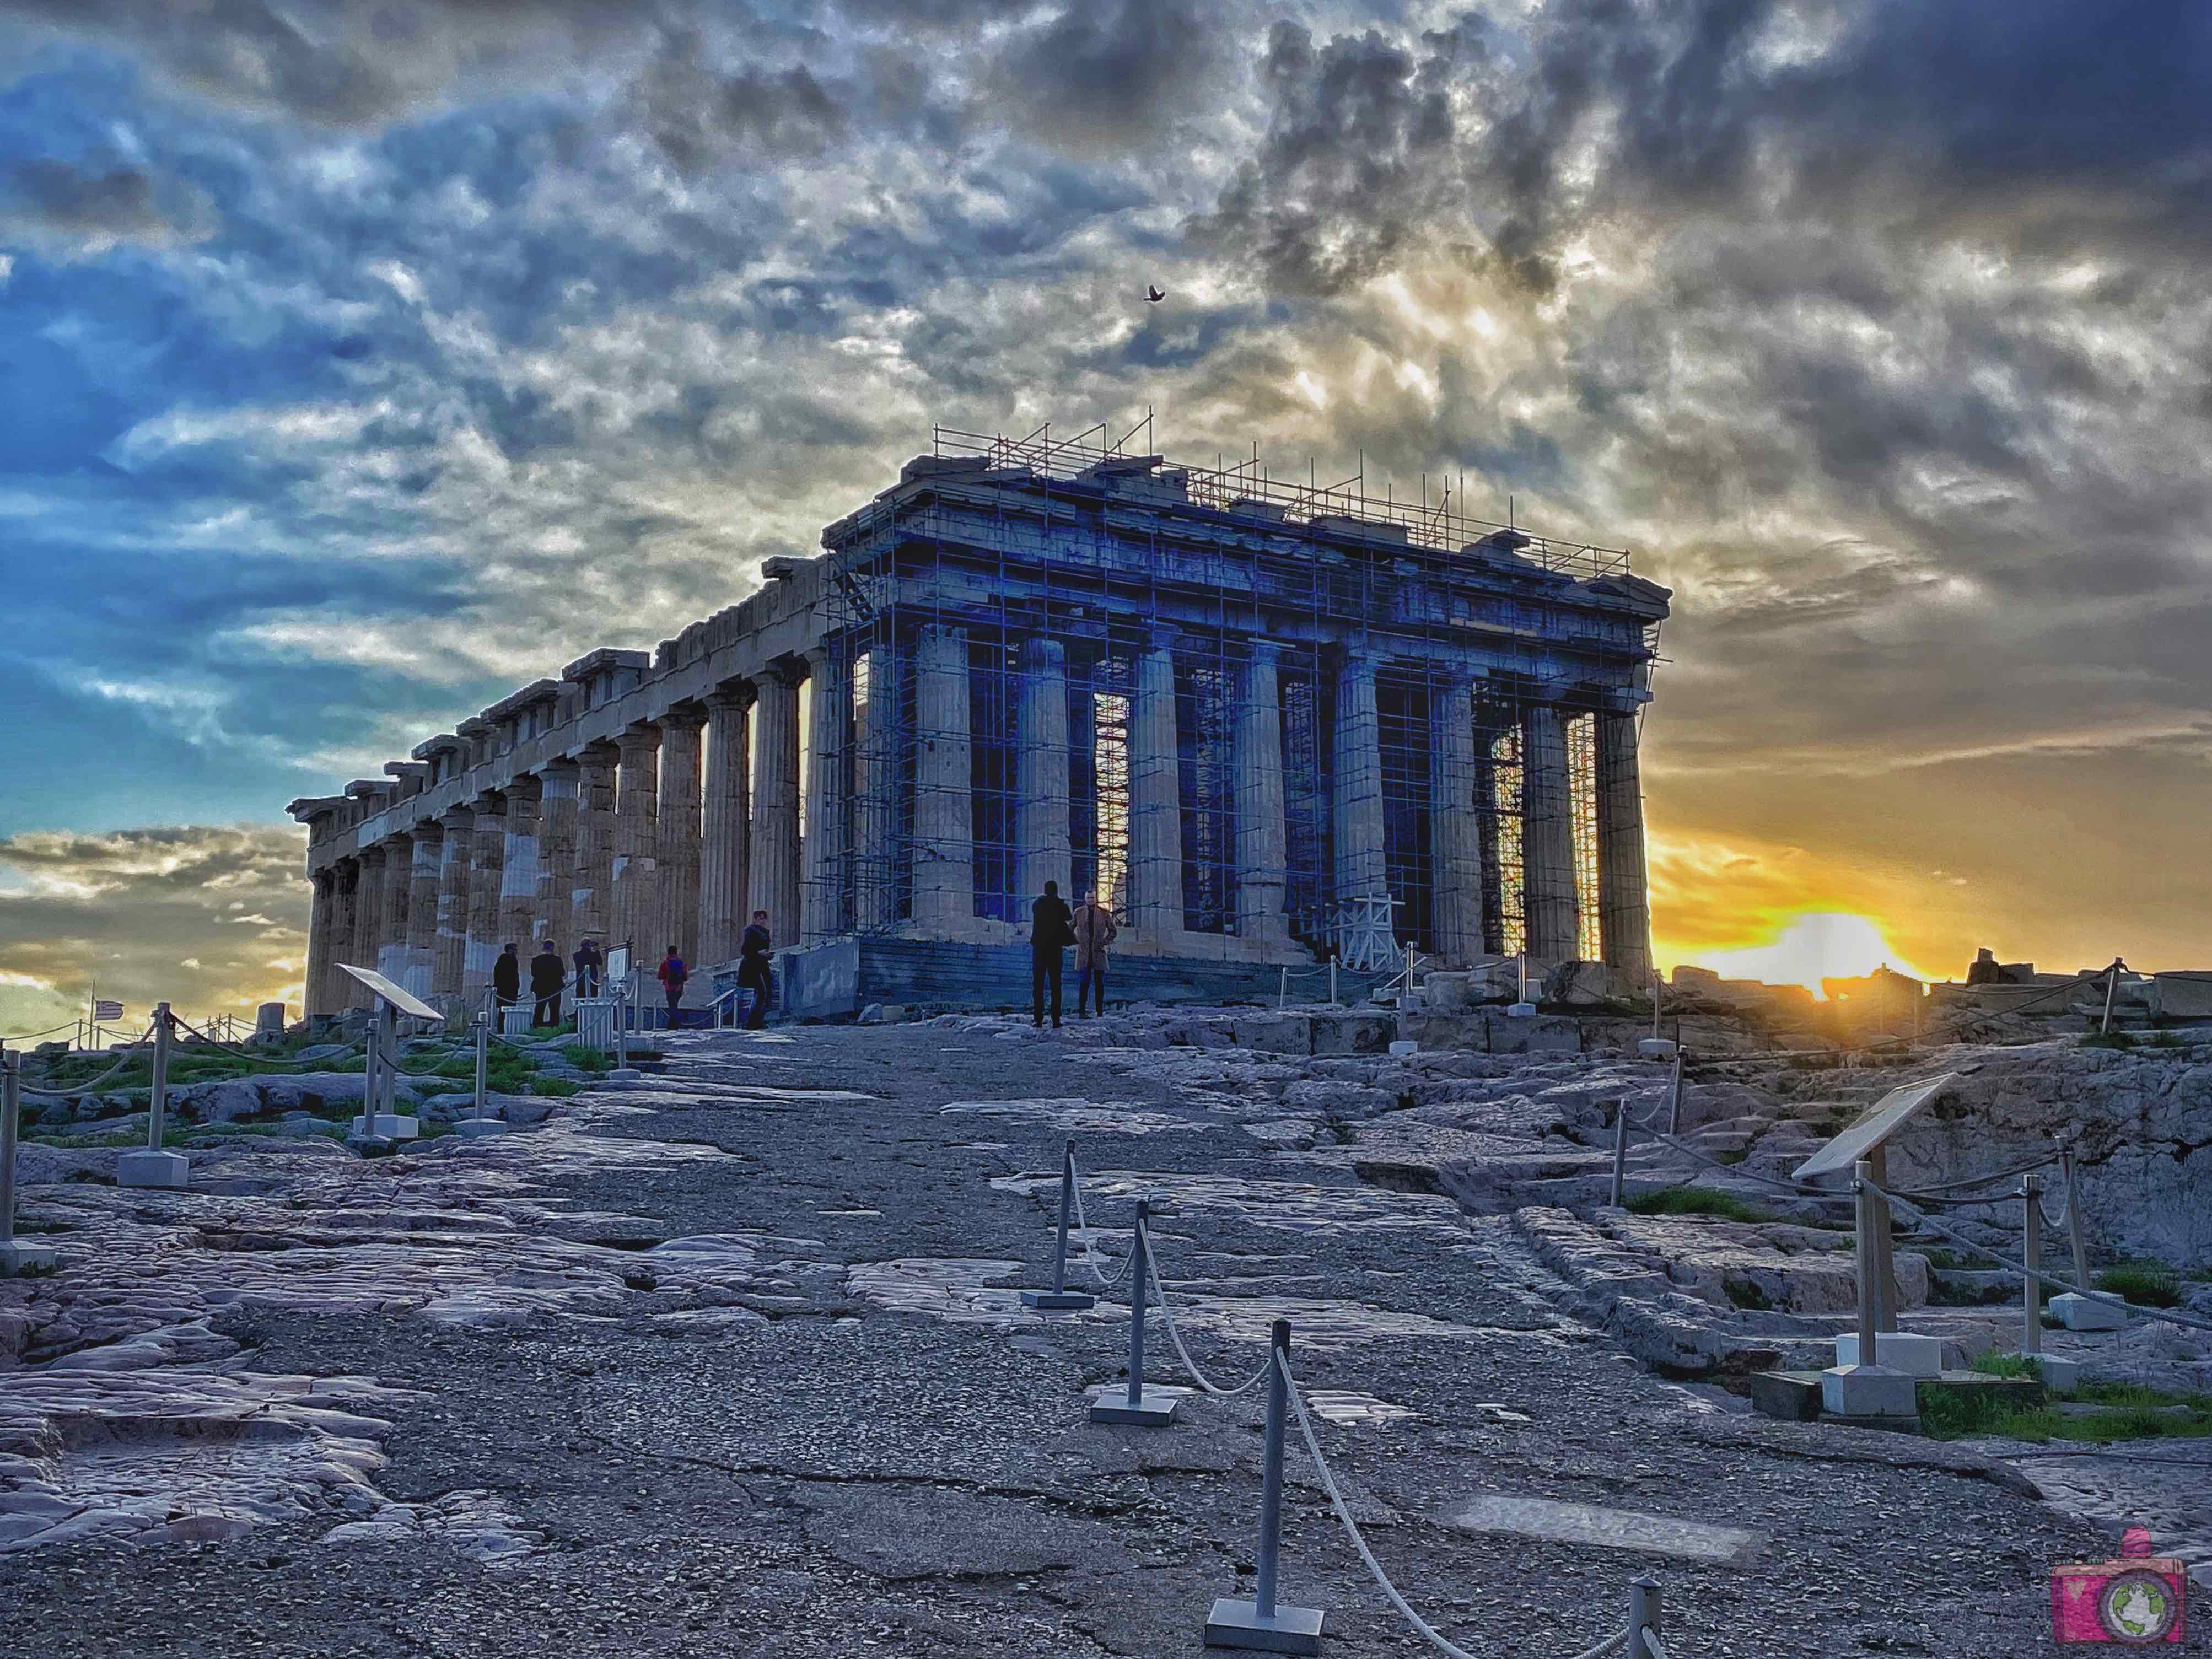 Acropoli Partenone Atene